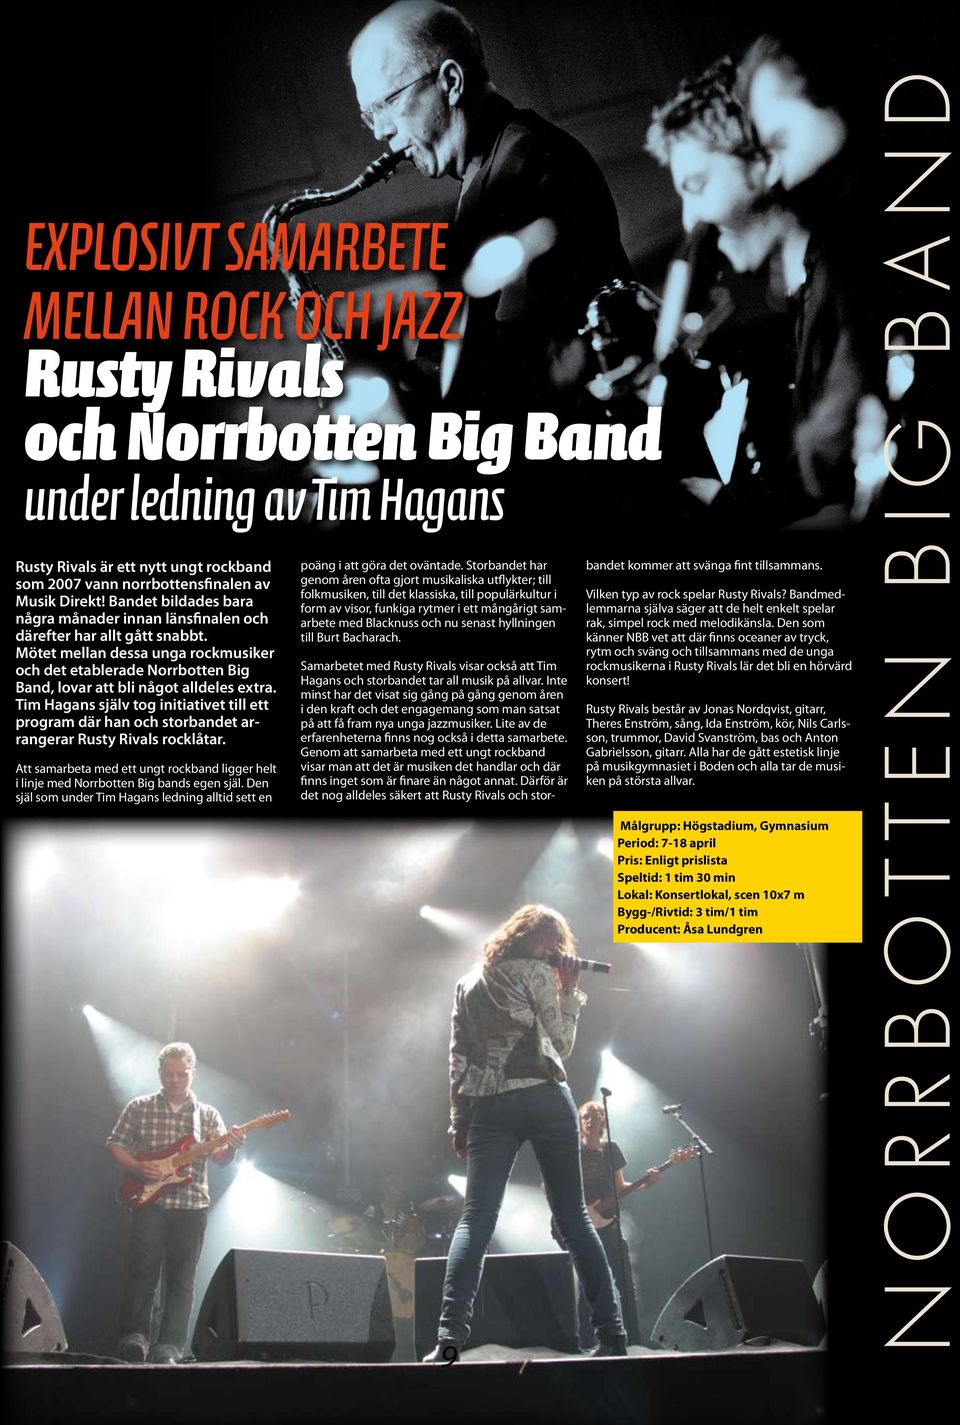 Tim Hagans själv tog initiativet till ett program där han och storbandet arrangerar Rusty Rivals rocklåtar. Att samarbeta med ett ungt rockband ligger helt i linje med Norrbotten Big bands egen själ.